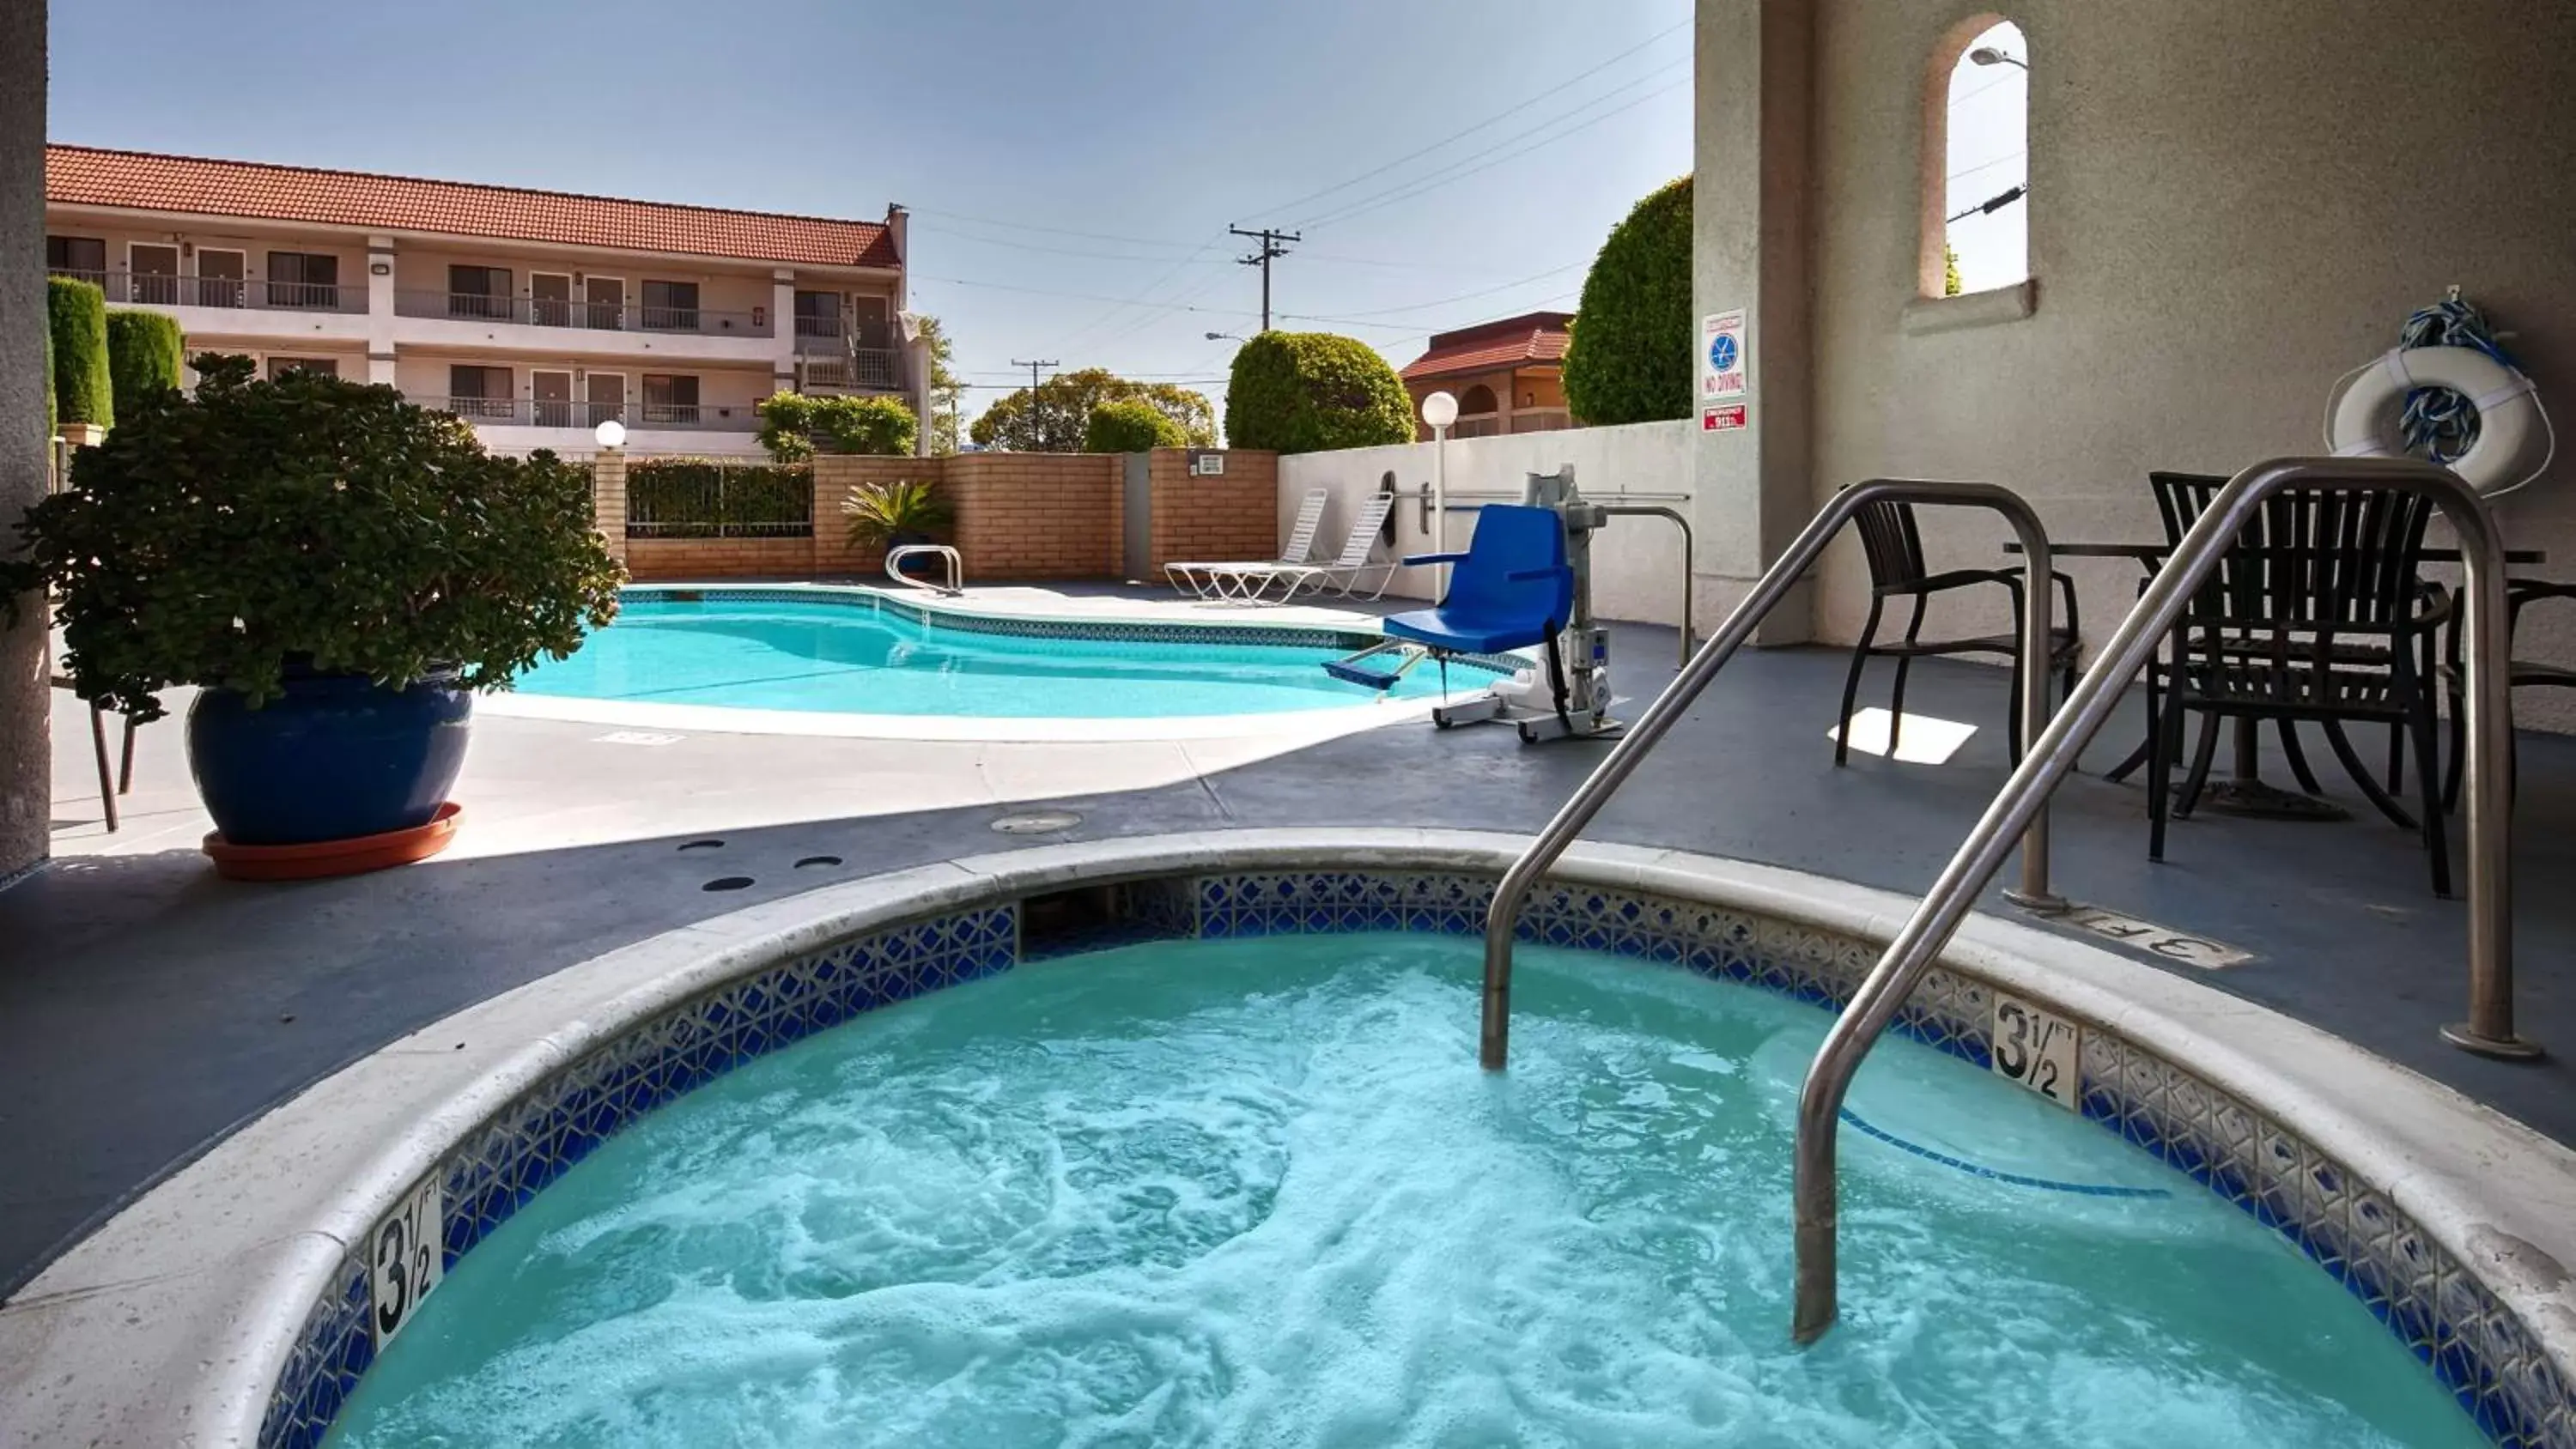 On site, Swimming Pool in Best Western Pasadena Royale Inn & Suites